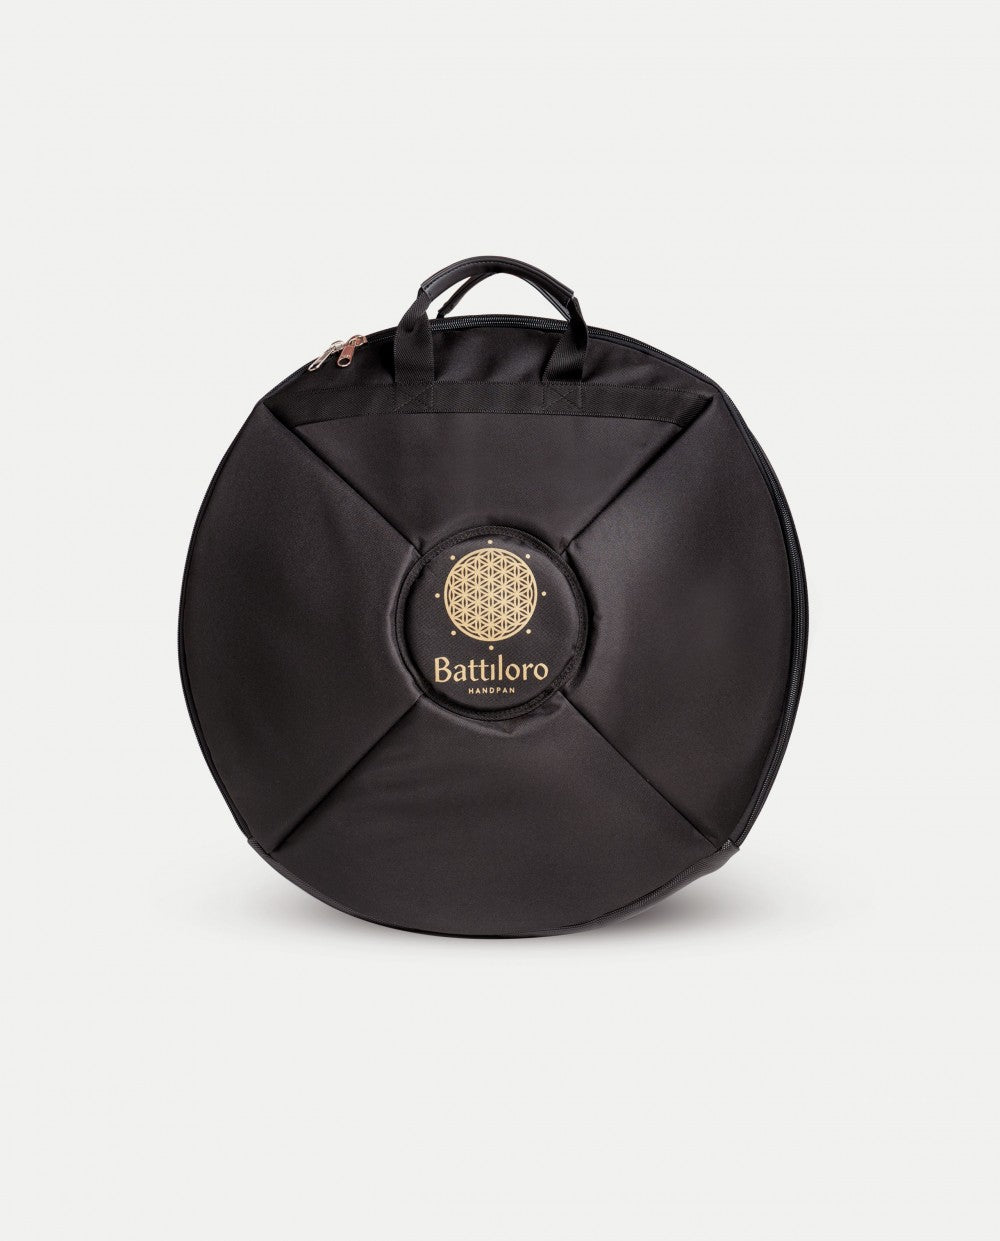 Schwarzes Handpan Softcase Rucksacktasche mit Trägern - Front Ansicht vor weißem Hintergrund